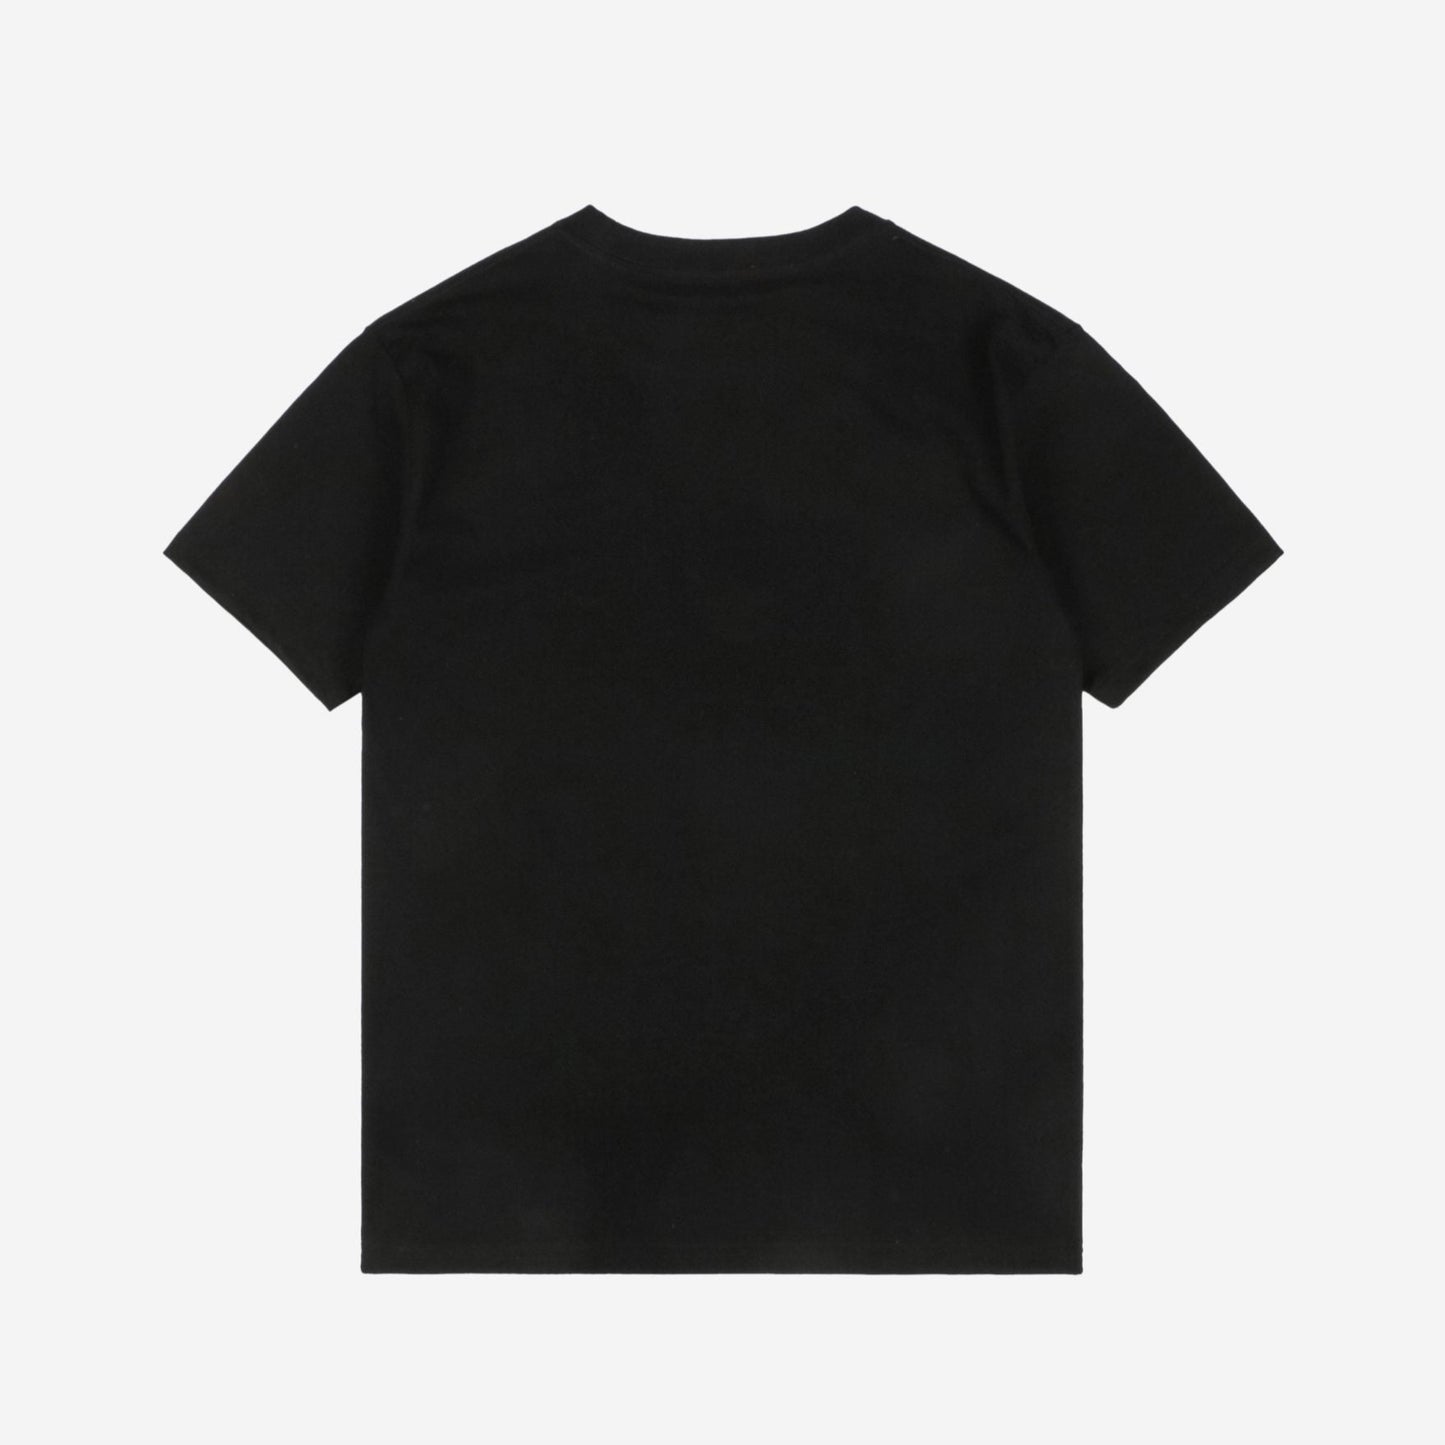 Gucc1 Round GG Print Cotton T-Shirt Black